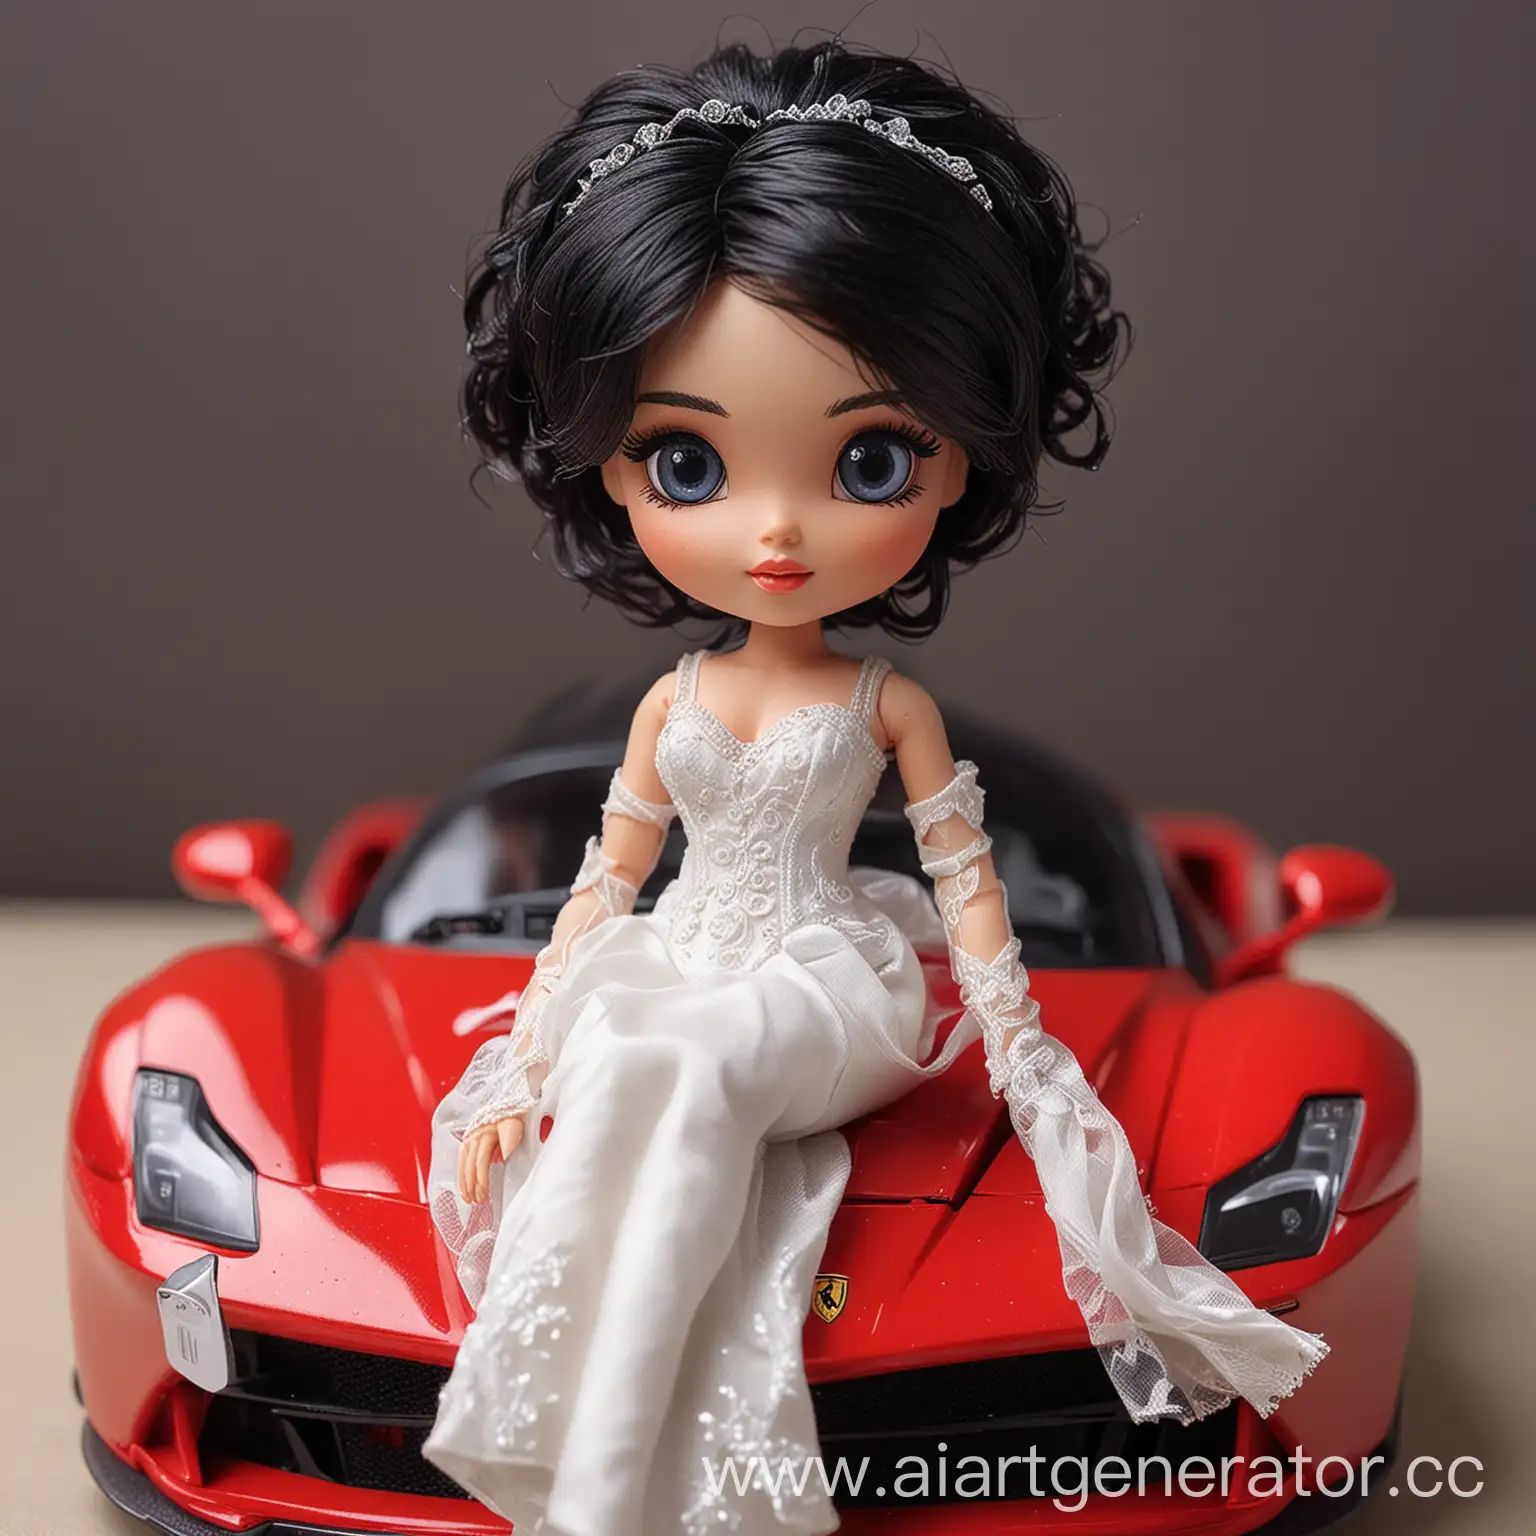 Elegant-BlackHaired-Bride-Doll-on-Ferrari-LaFerrari-Hood